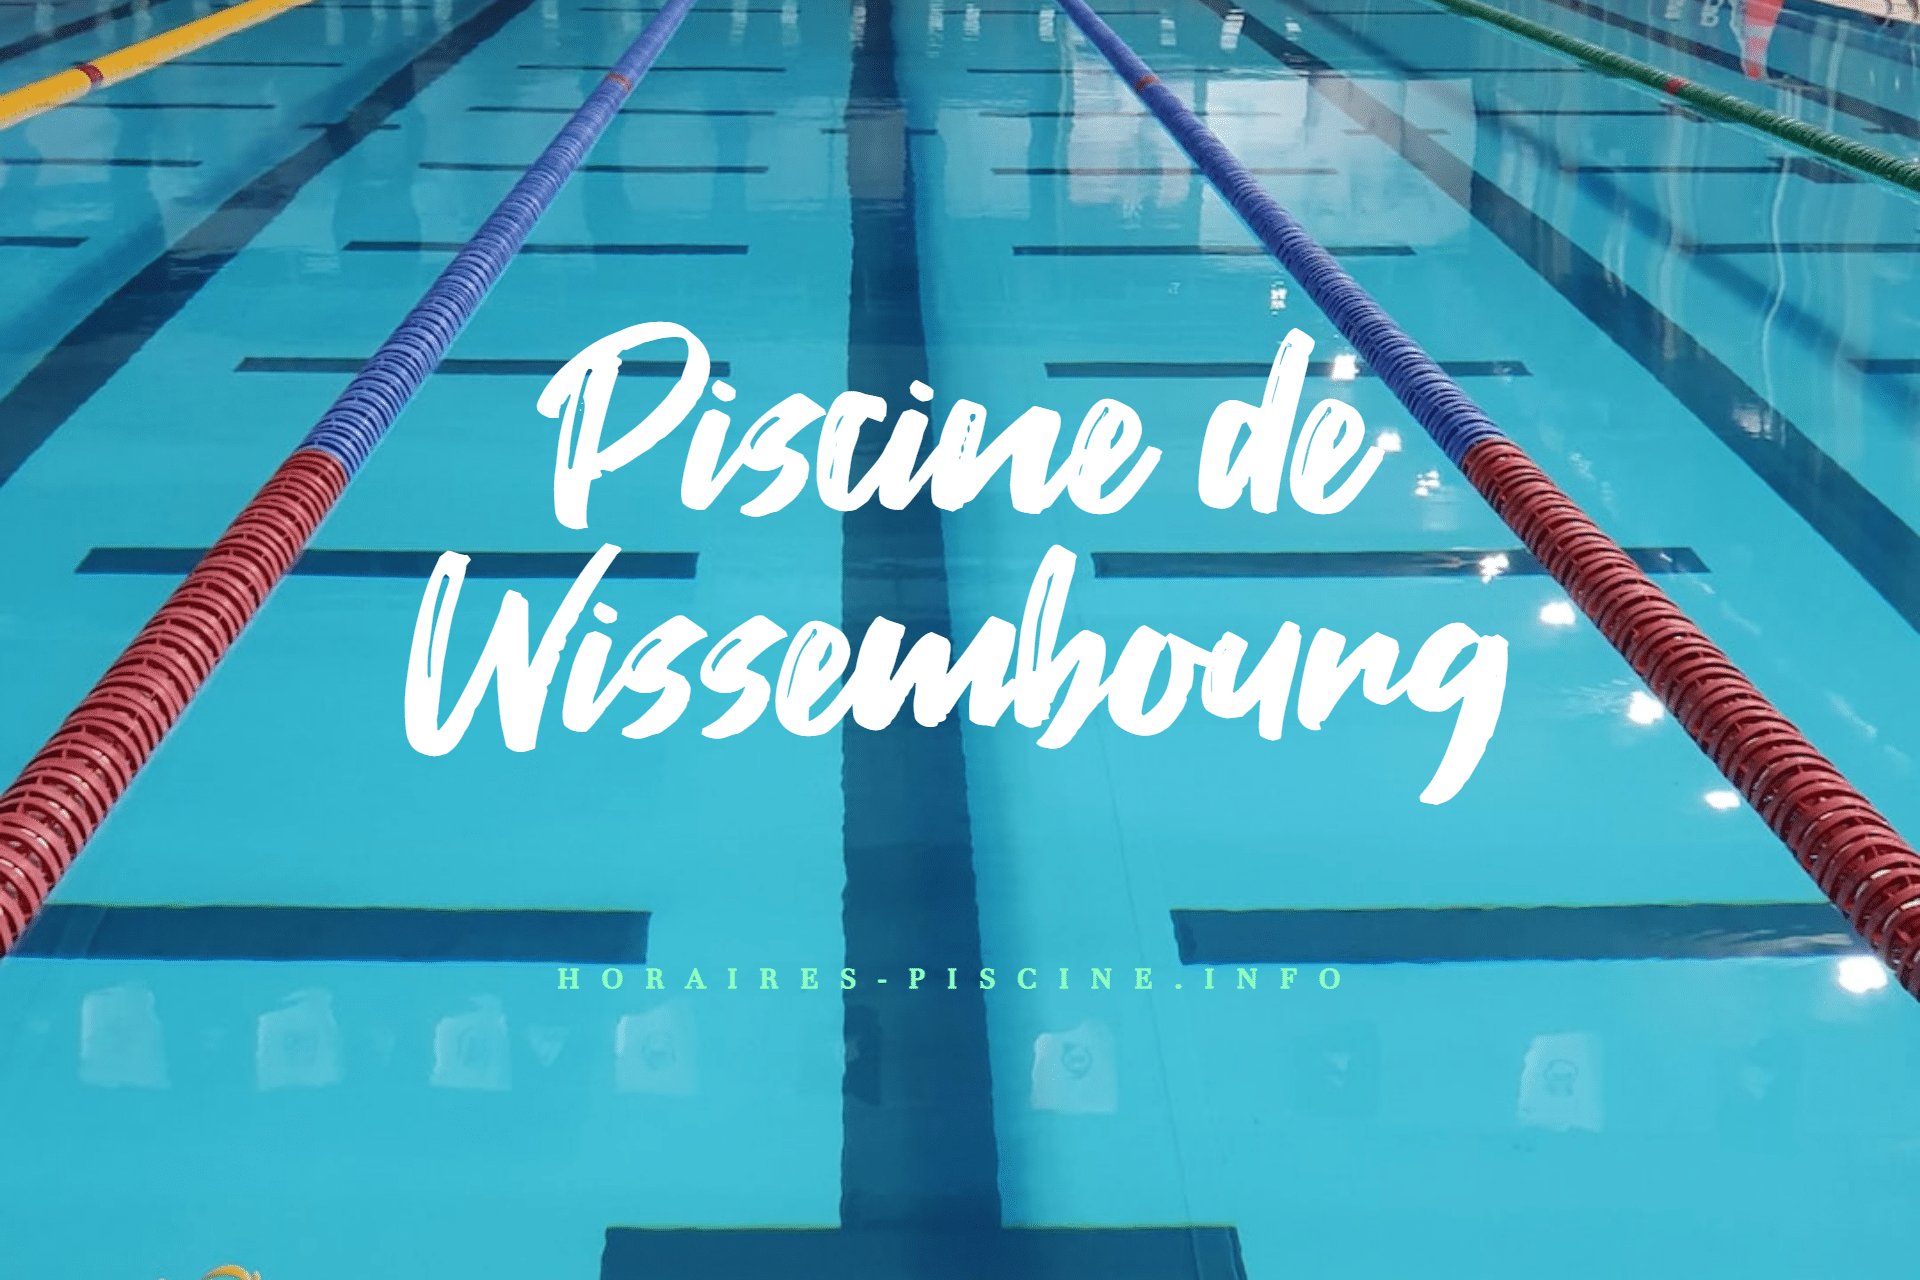 Piscine de Wissembourg